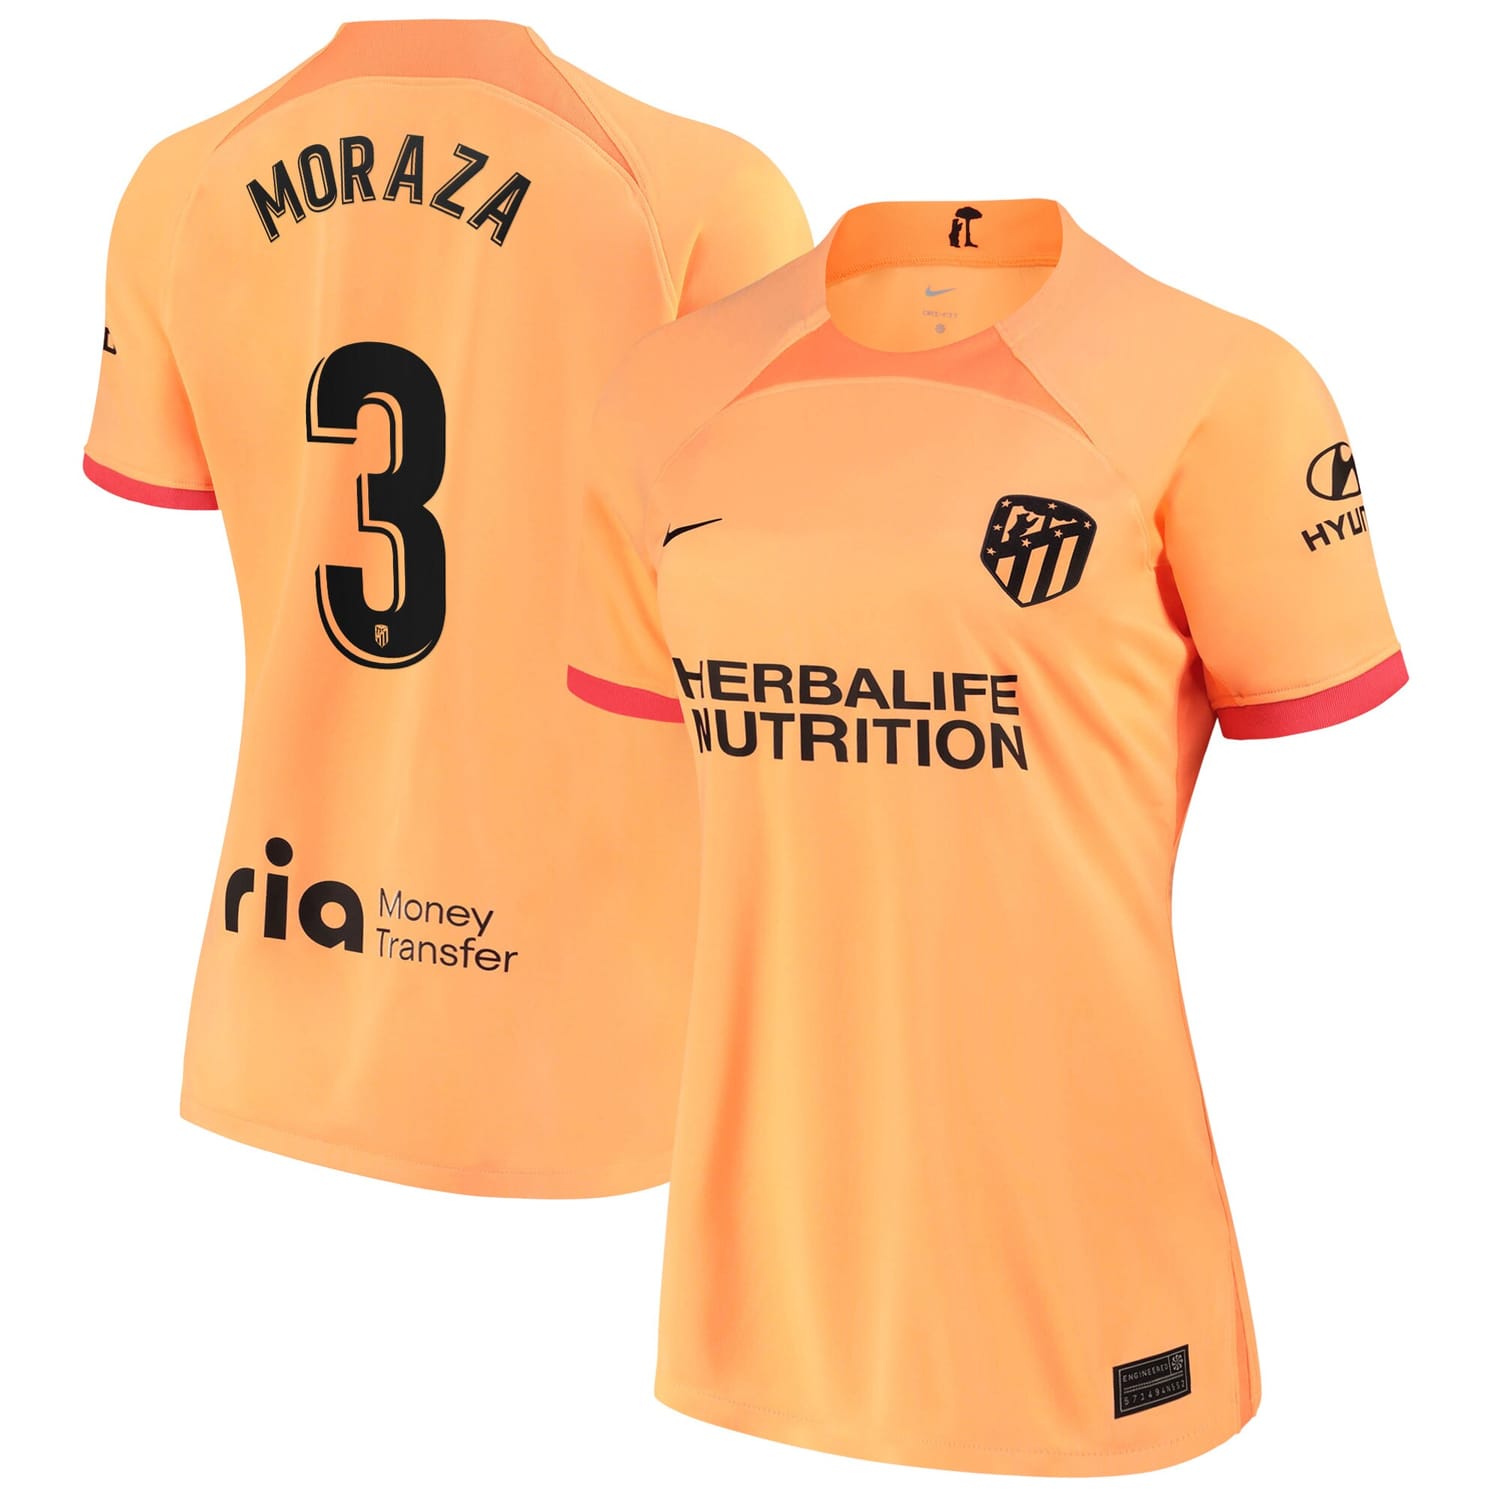 La Liga Atletico de Madrid Third Jersey Shirt 2022-23 player Ainhoa Vicente Moraza 3 printing for Women